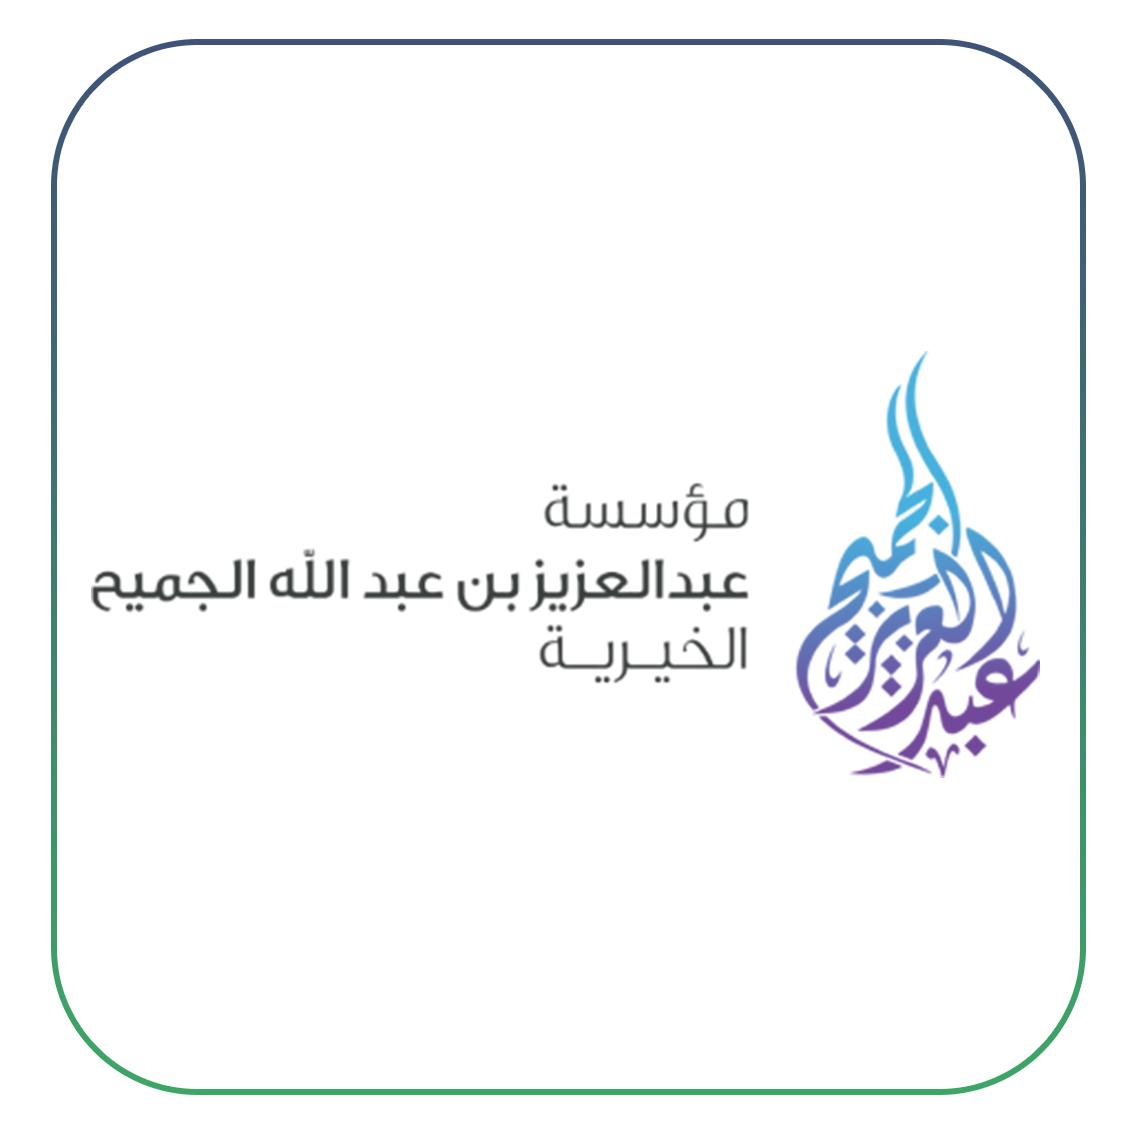 مؤسسة عبدالعزيز بن عبدالله الجميح الخيرية